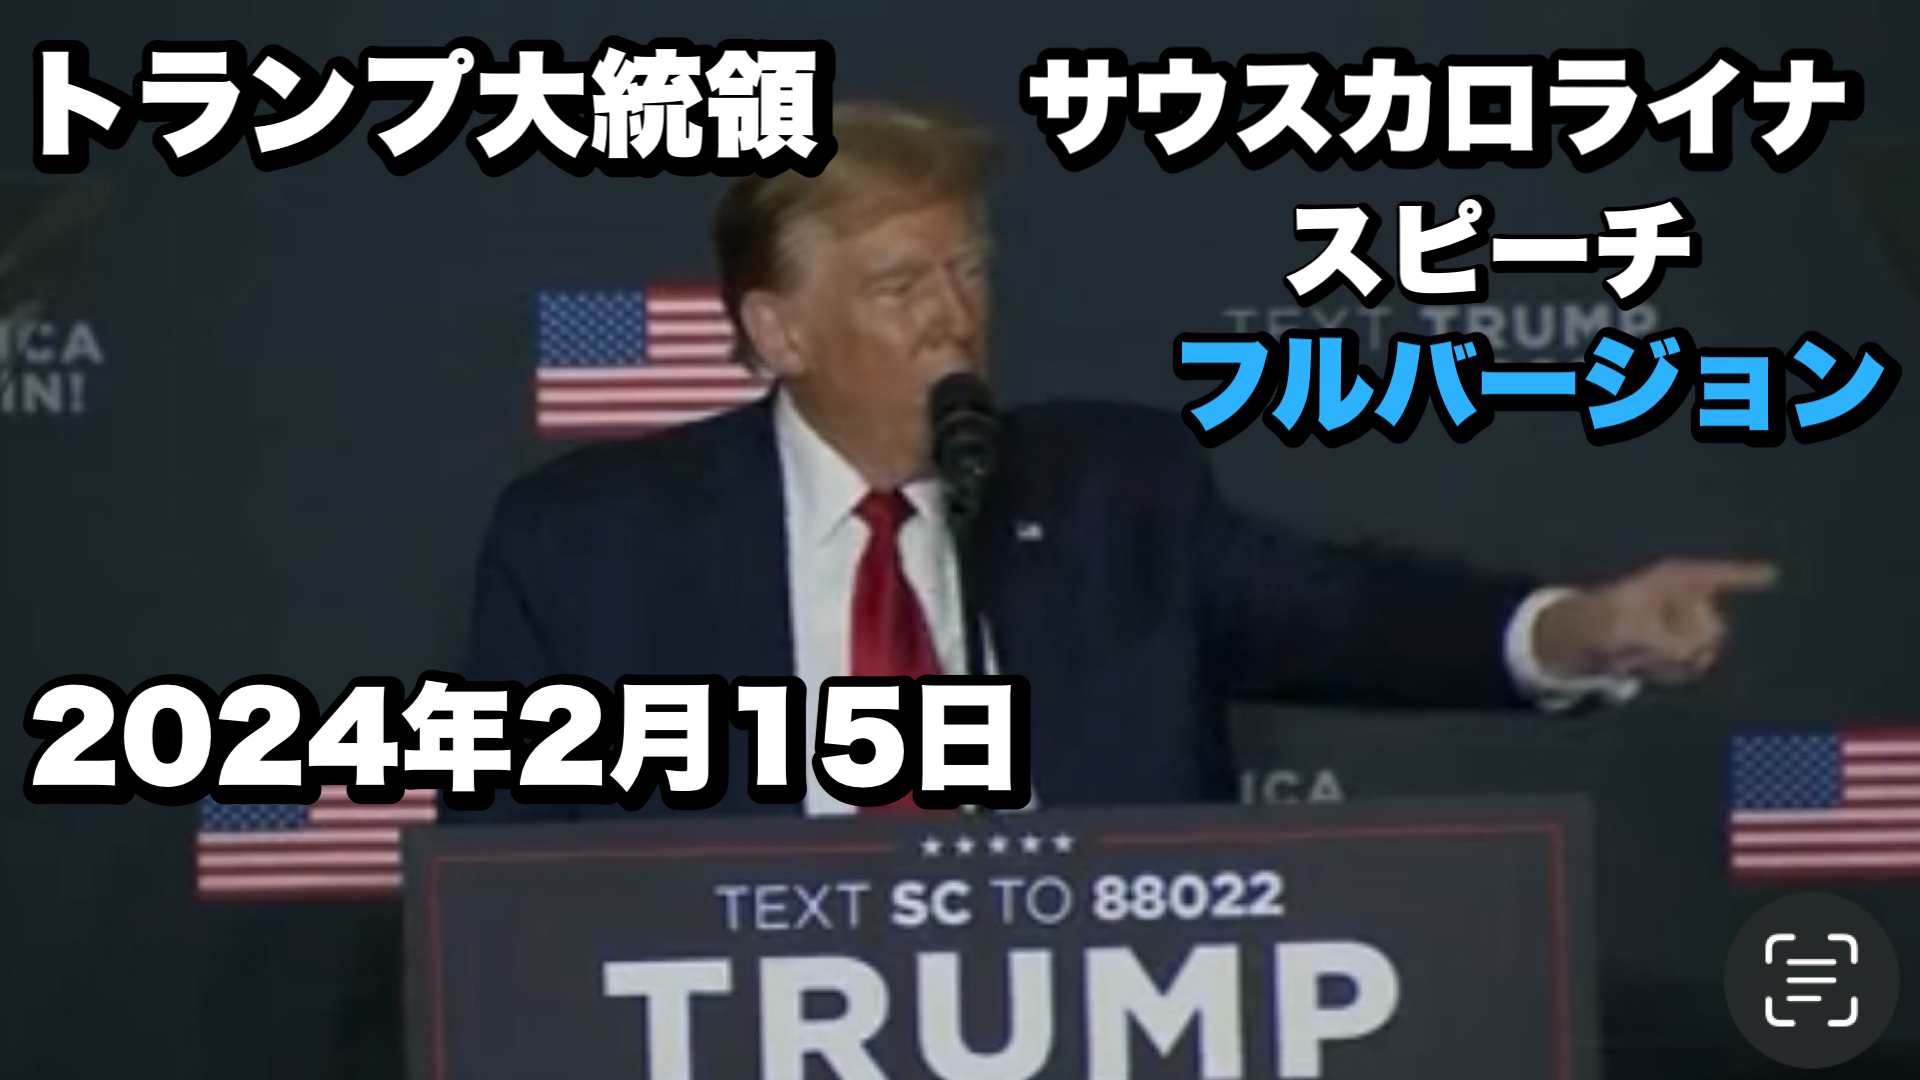 トランプ大統領2月15日サウスカロライナスピーチ日本語字幕付映像